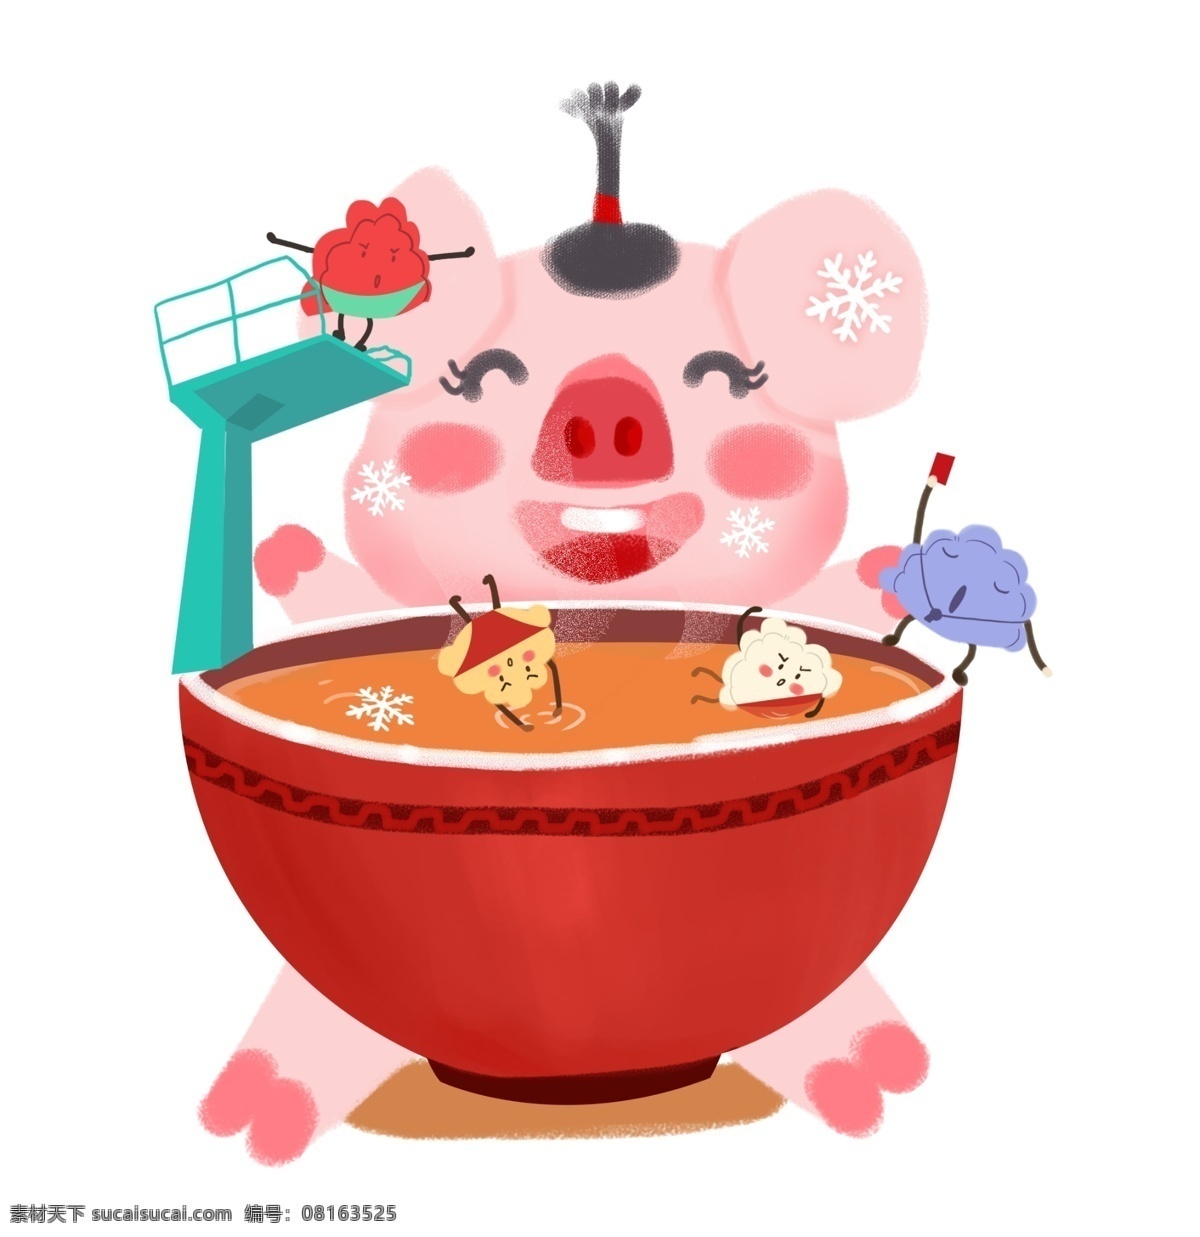 春节 冬至 卡通 手绘 吃 饺子 可爱 年画 猪 吃饺子 颜色 冬至吃饺子 搞笑 跳水 大笑的猪猪 吃饺子的猪猪